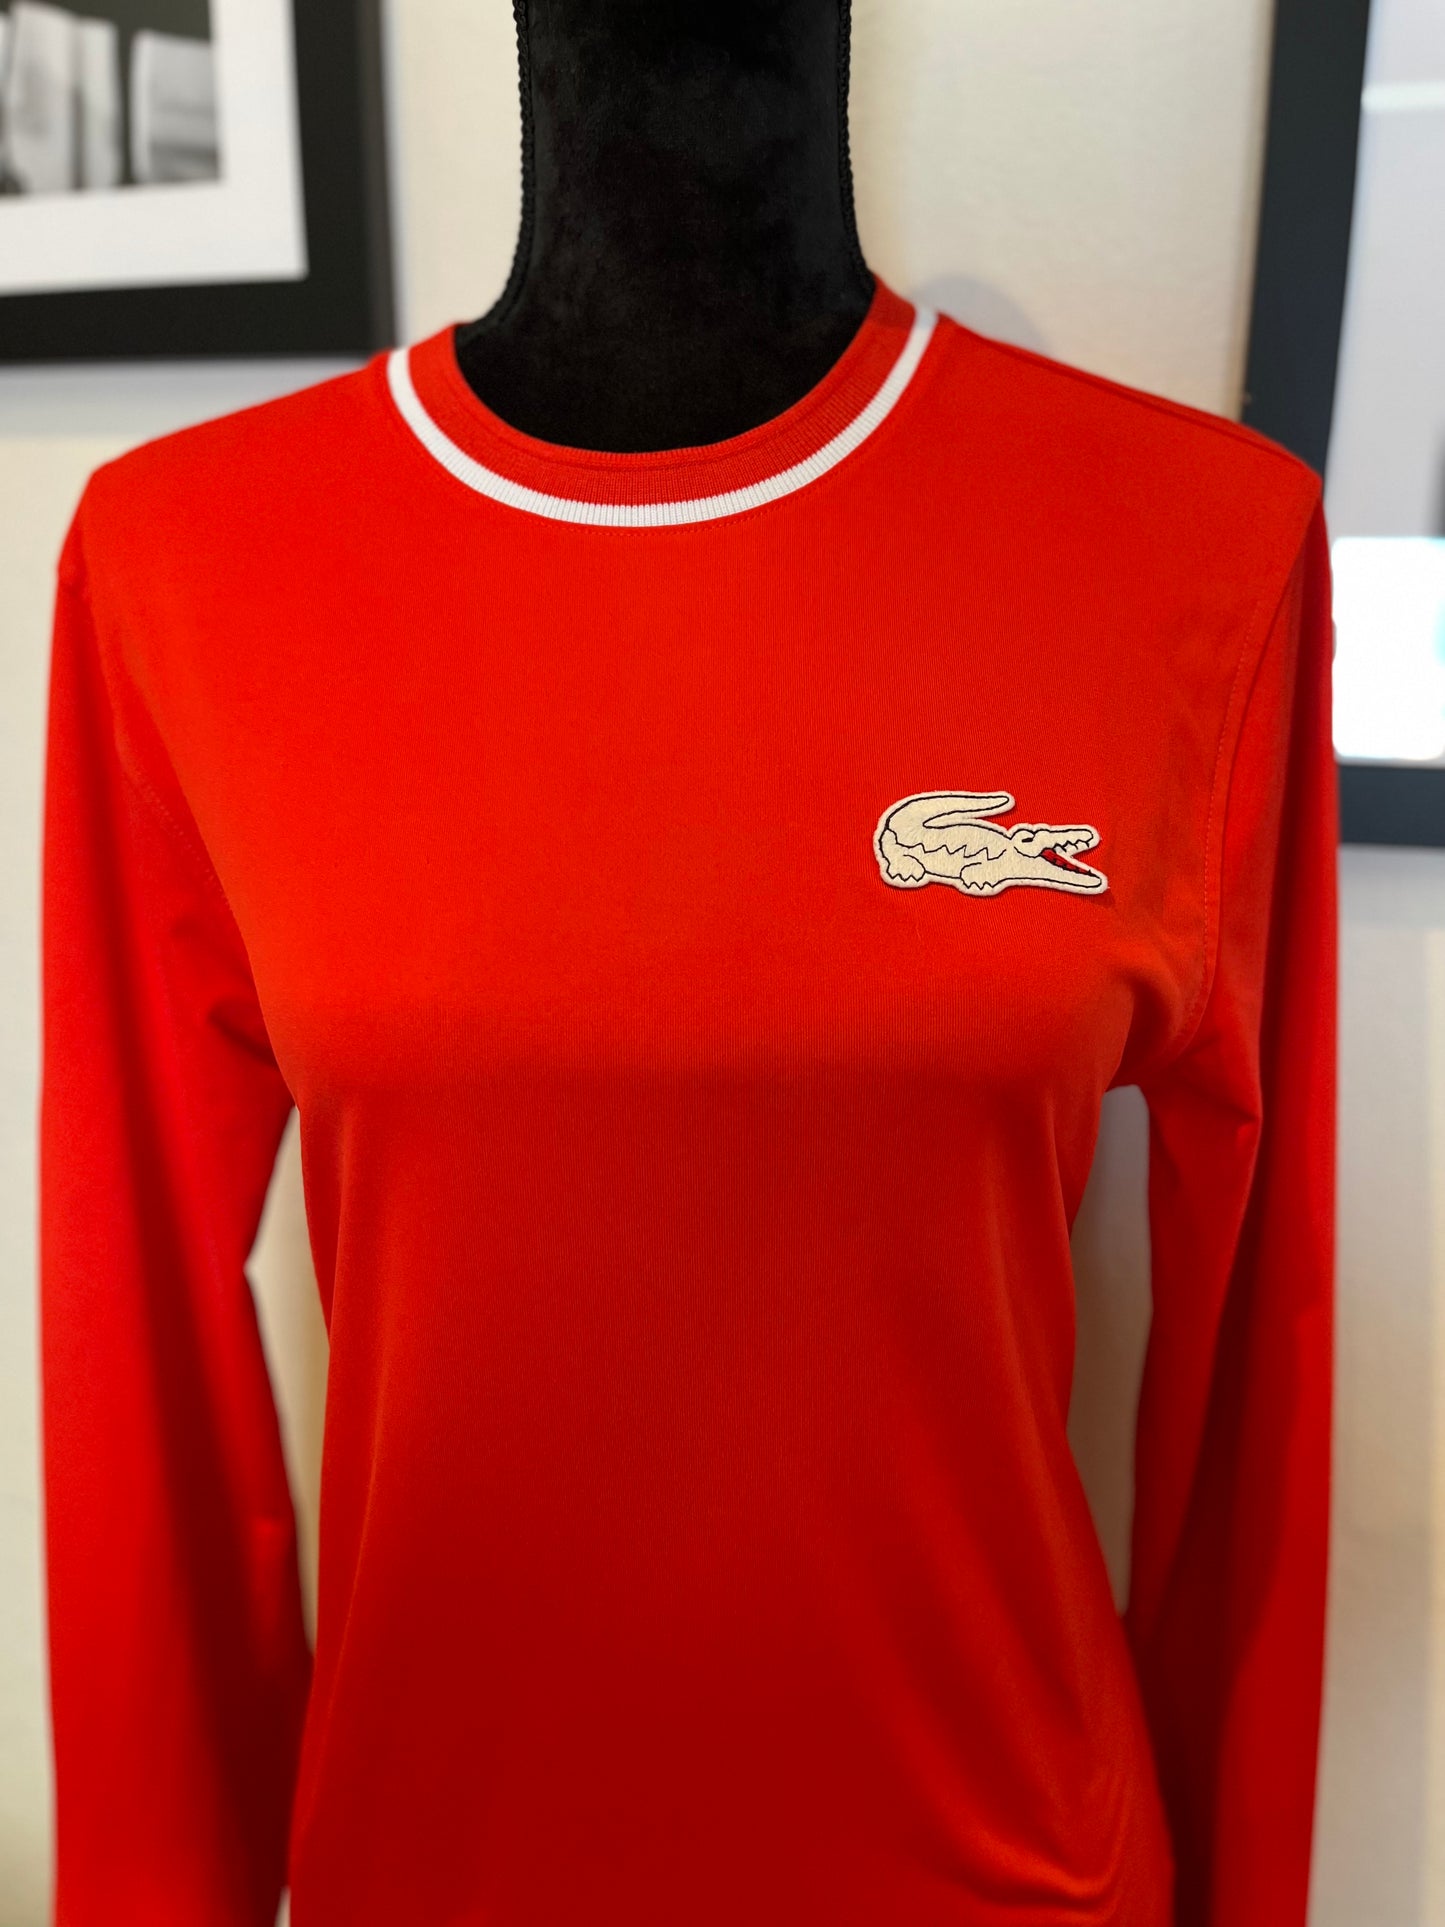 Lacoste Vintage Australian Open Women’s Red Long Sleeve T Size 2 Small